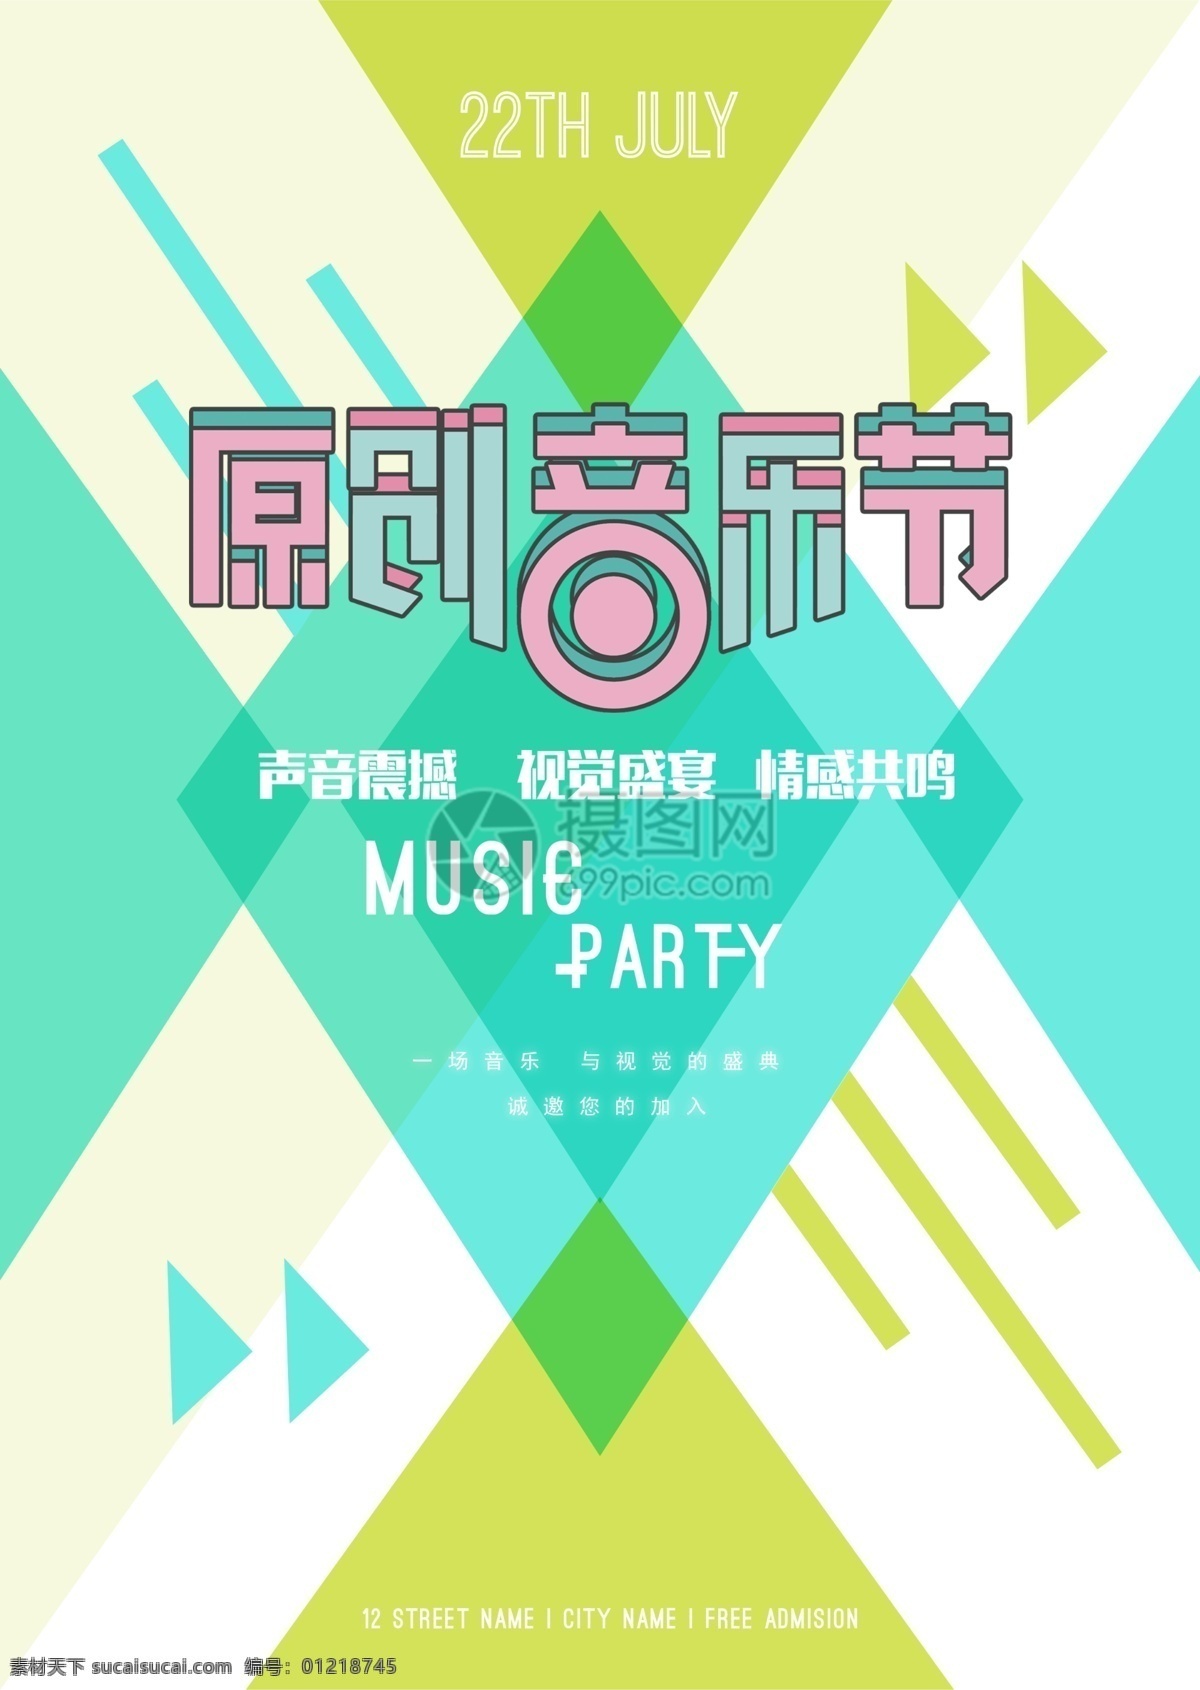 原创 音乐节 宣传海报 音乐 音乐派对 party 音乐嘉年华 狂欢节 享受音乐 海报